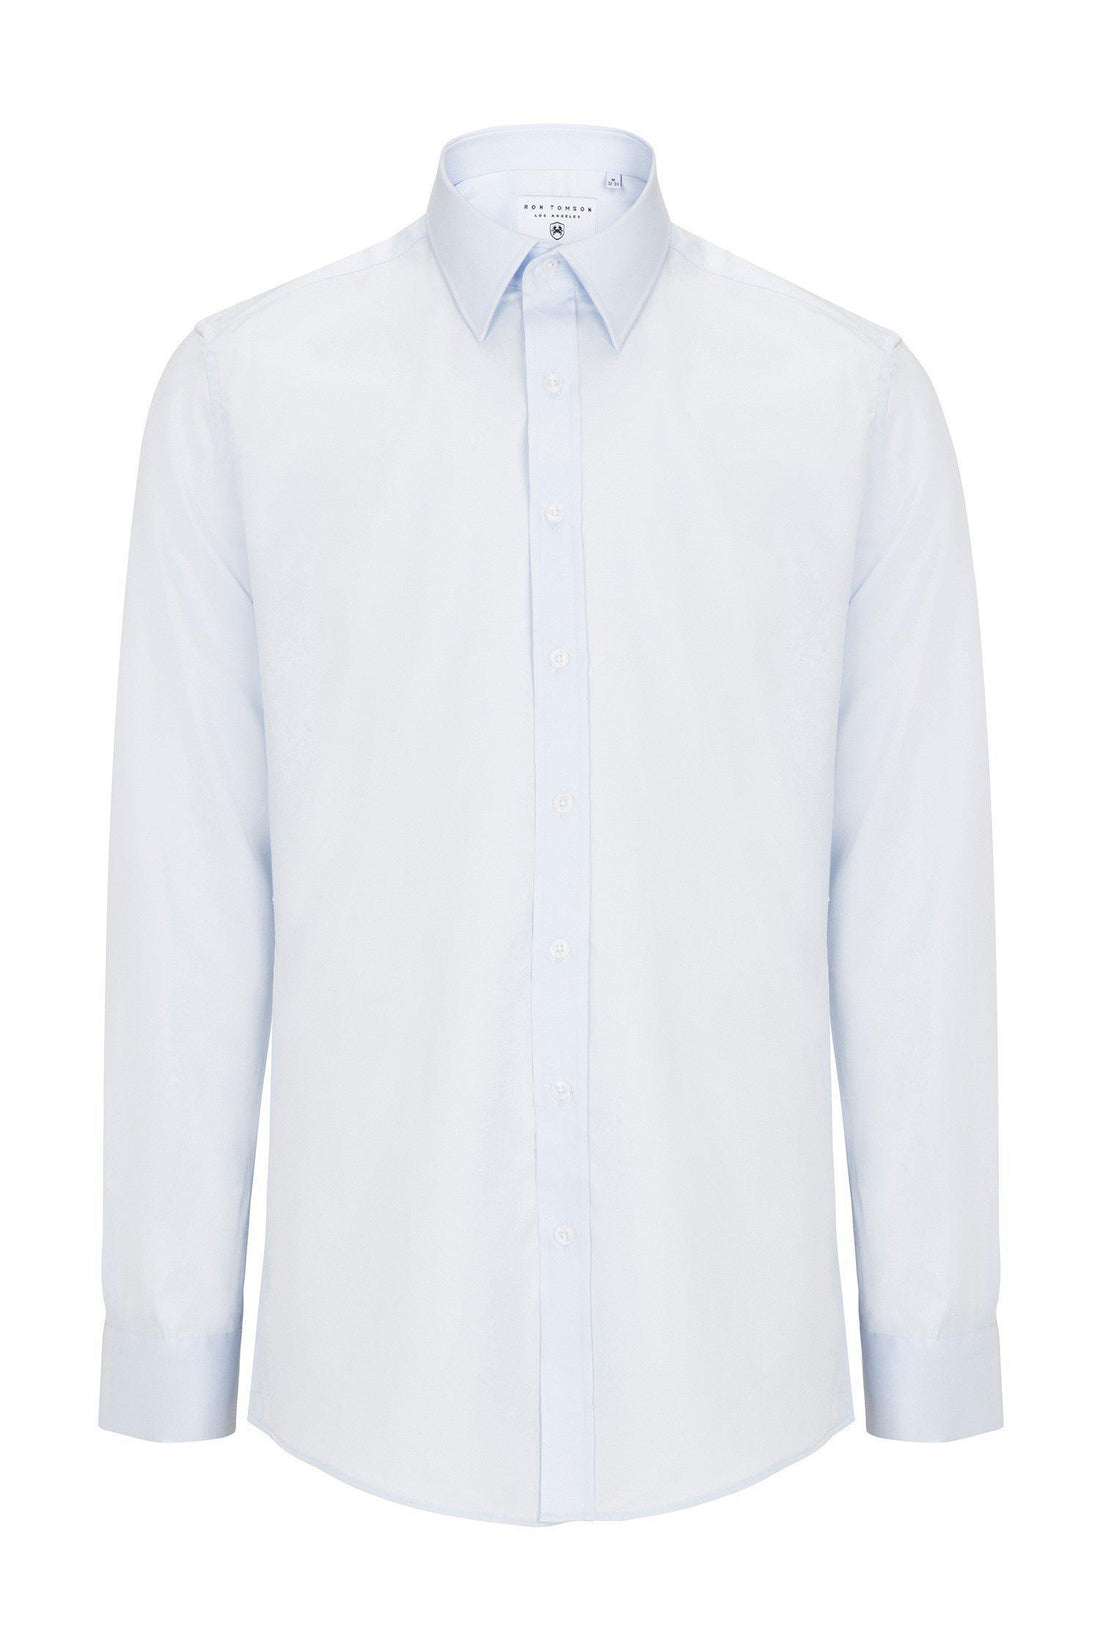 Pure Cotton Sateen Dress Shirt - Light Blue - Ron Tomson